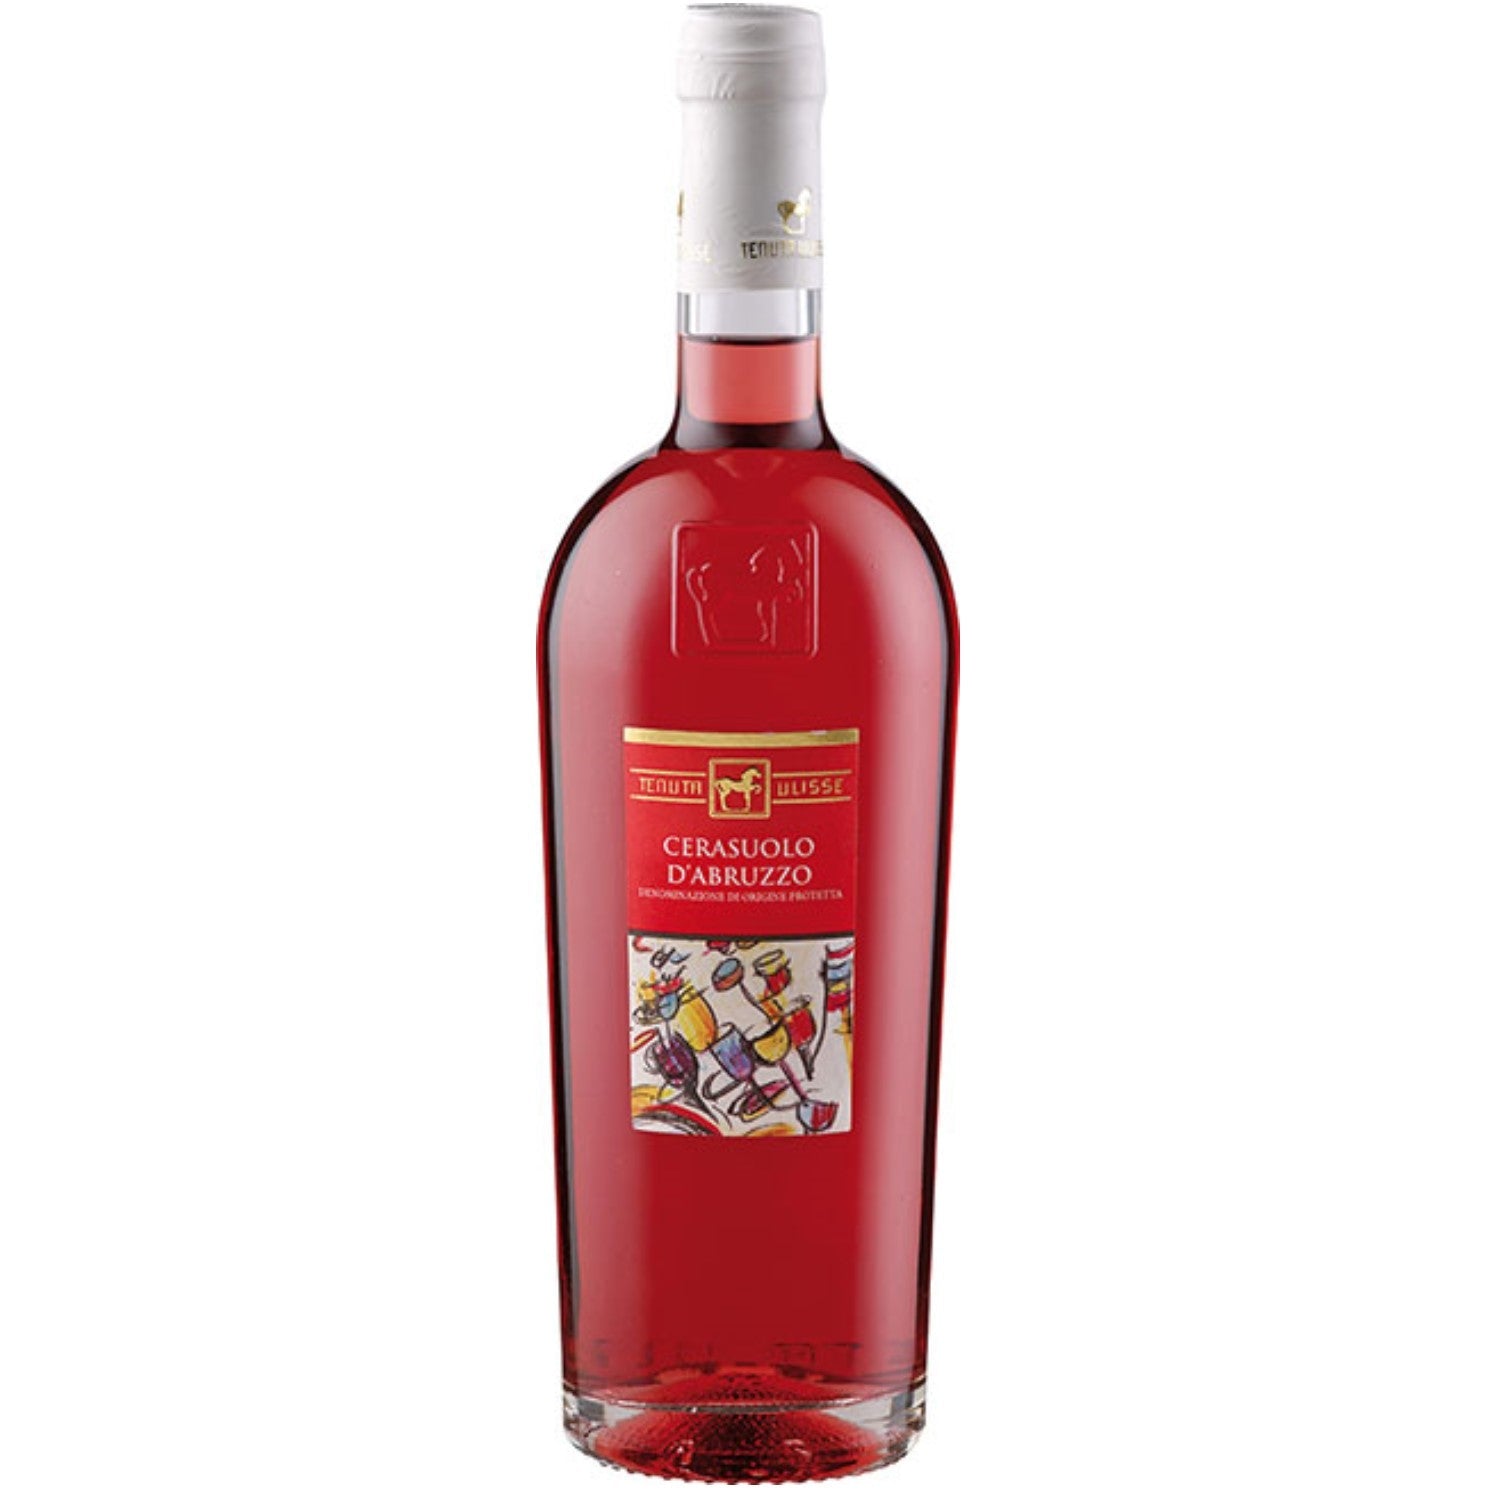 Tenuta Ulisse Cerasuolo d'Abruzzo Roséwein Wein Trocken DOP Italien (6 x 0.75l) - Versanel -